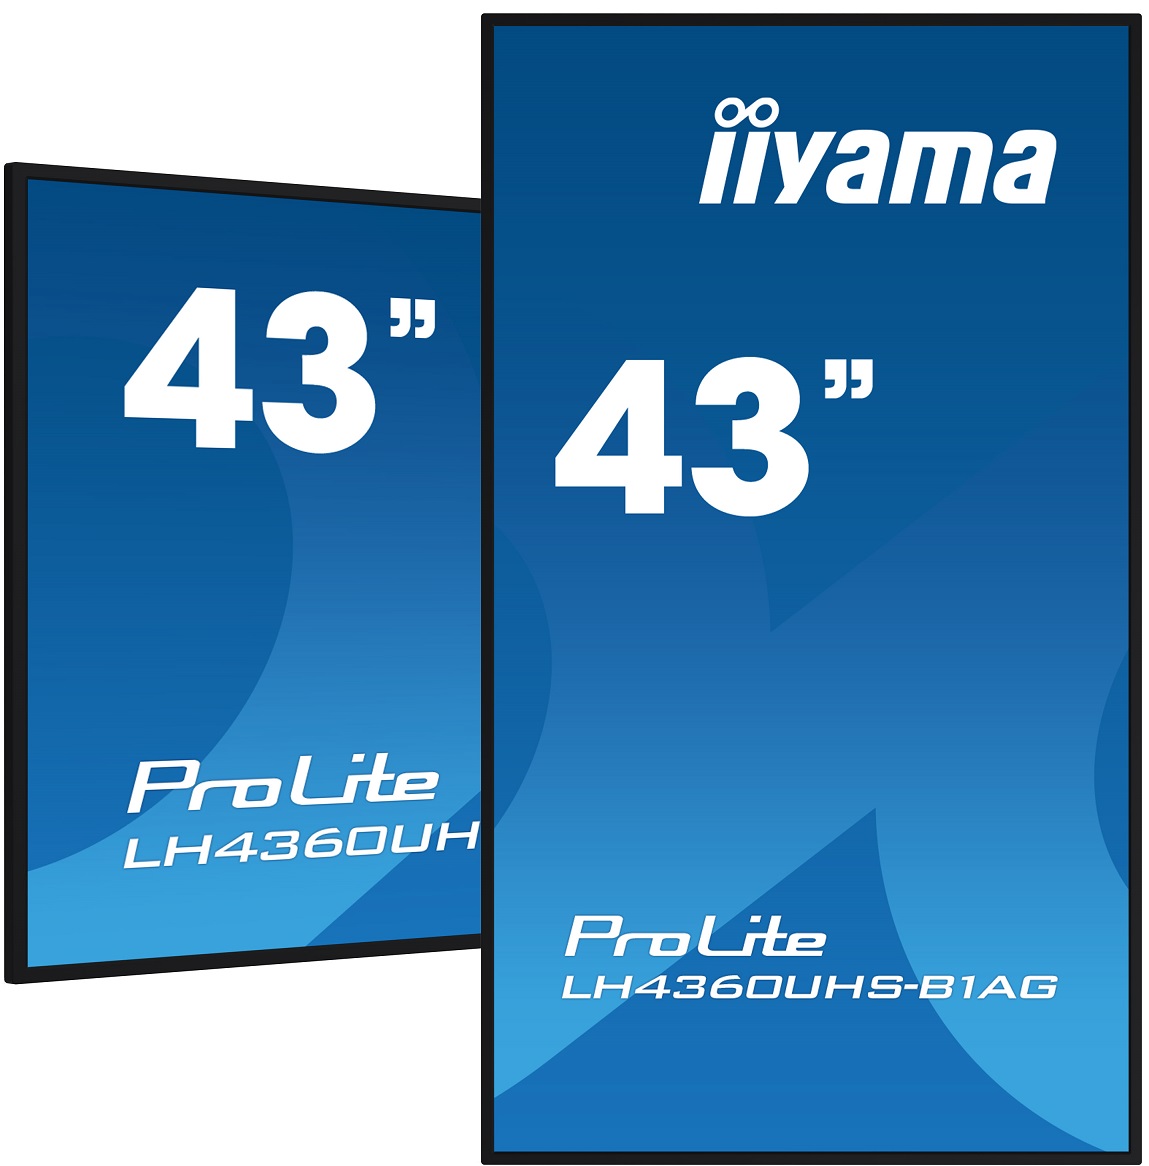 43" iiyama LH4360UHS-B1AG: VA, 4K UHD, And.11, 24/ 7 